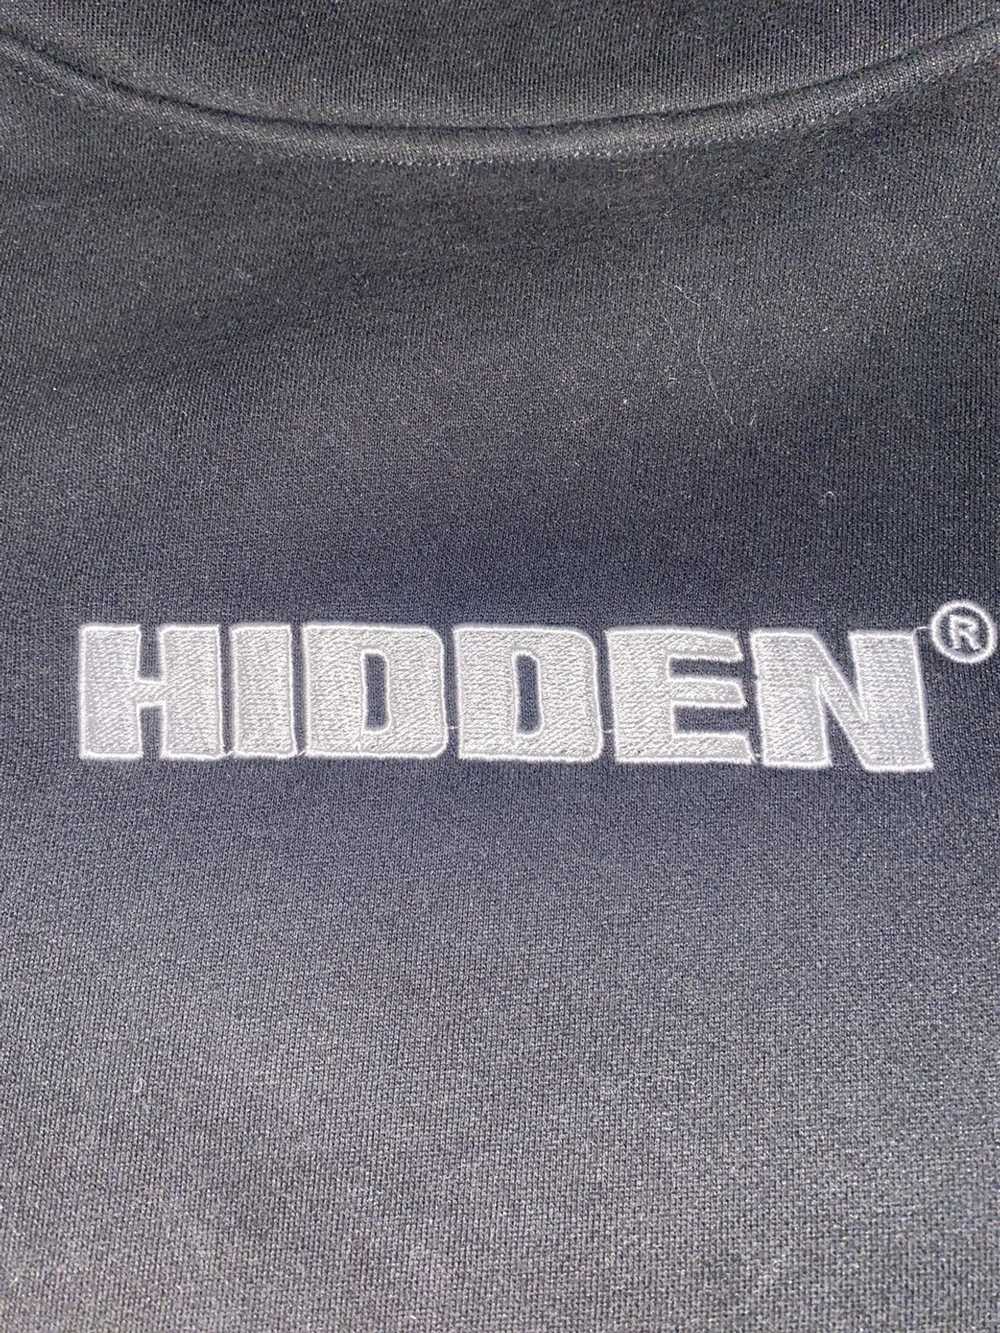 Hidden Characters Hidden Characters Black Hoodie … - image 3